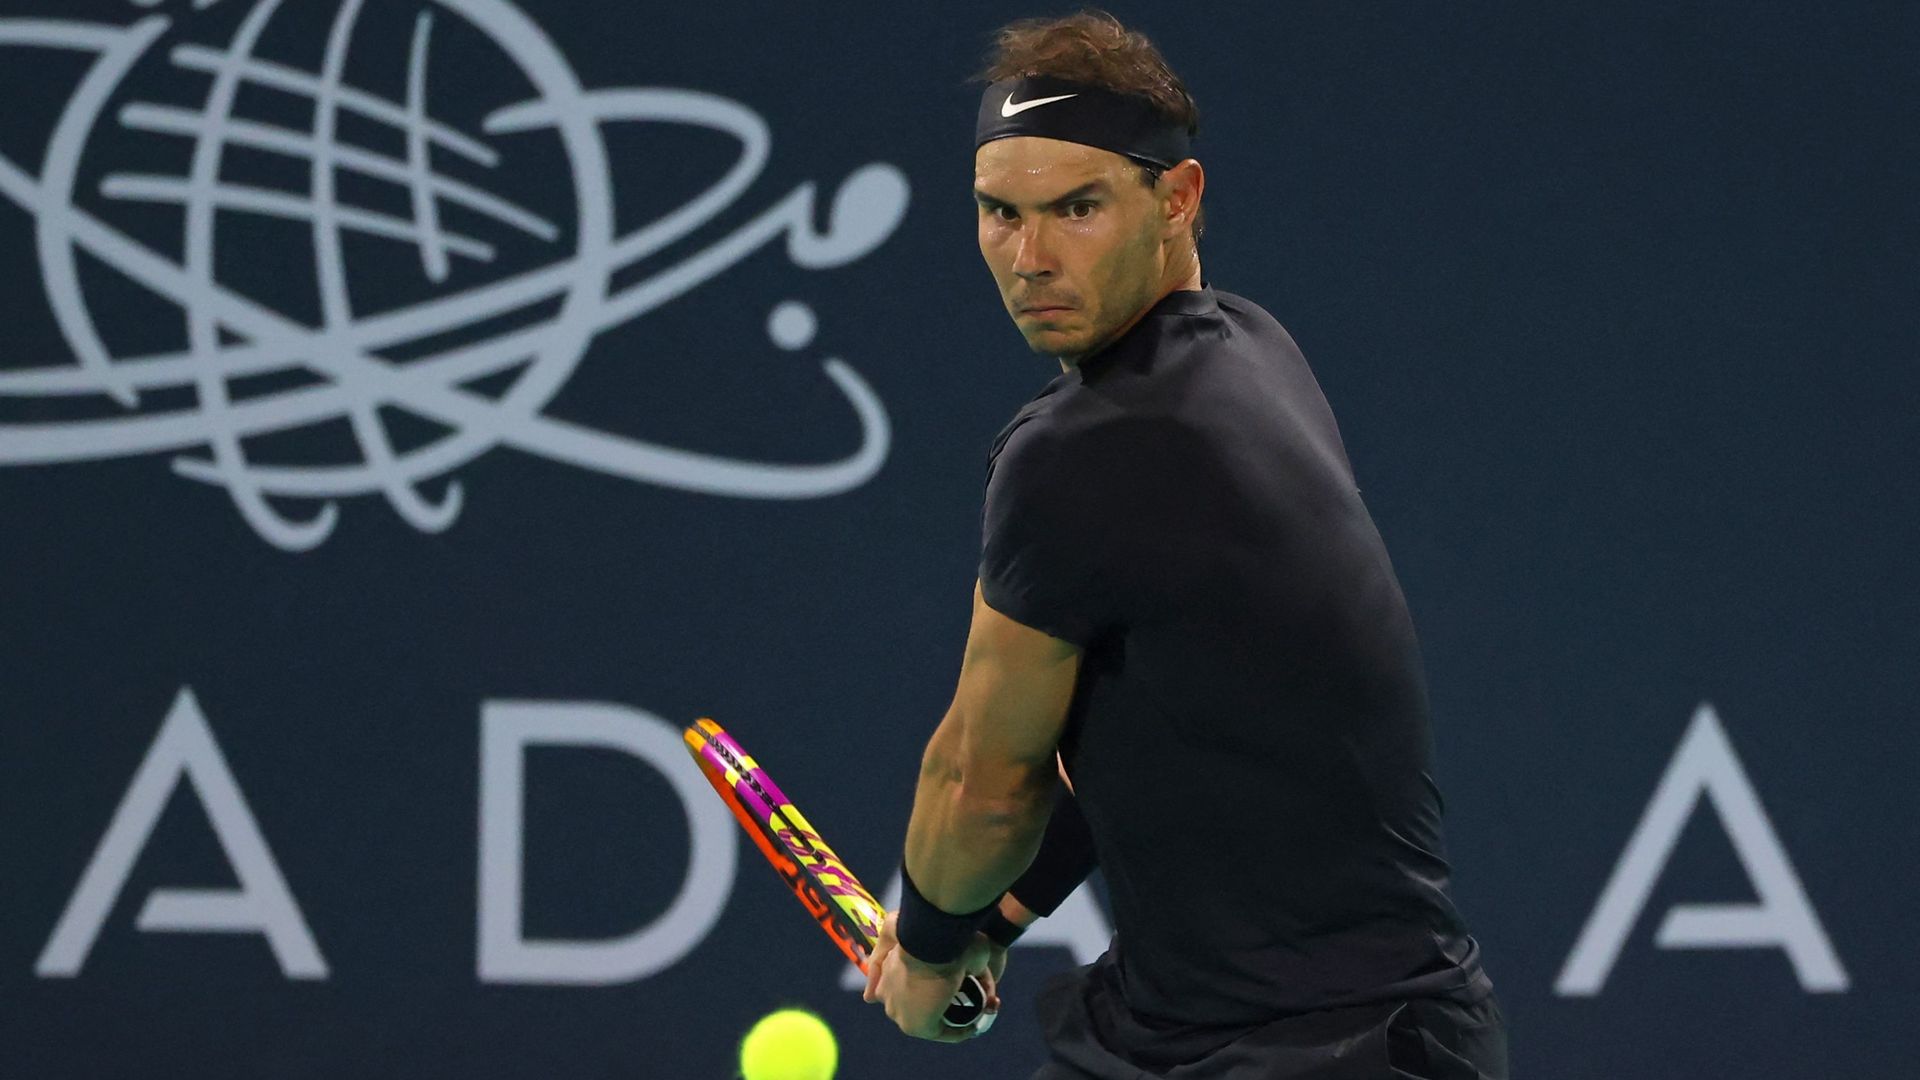 Après avoir fait sa rentrée lors du tournoi d’exhibition d’Abou Dhabi ce week-end, Rafael Nadal n’est pas encore certain de participer à l’Open d’Australie.